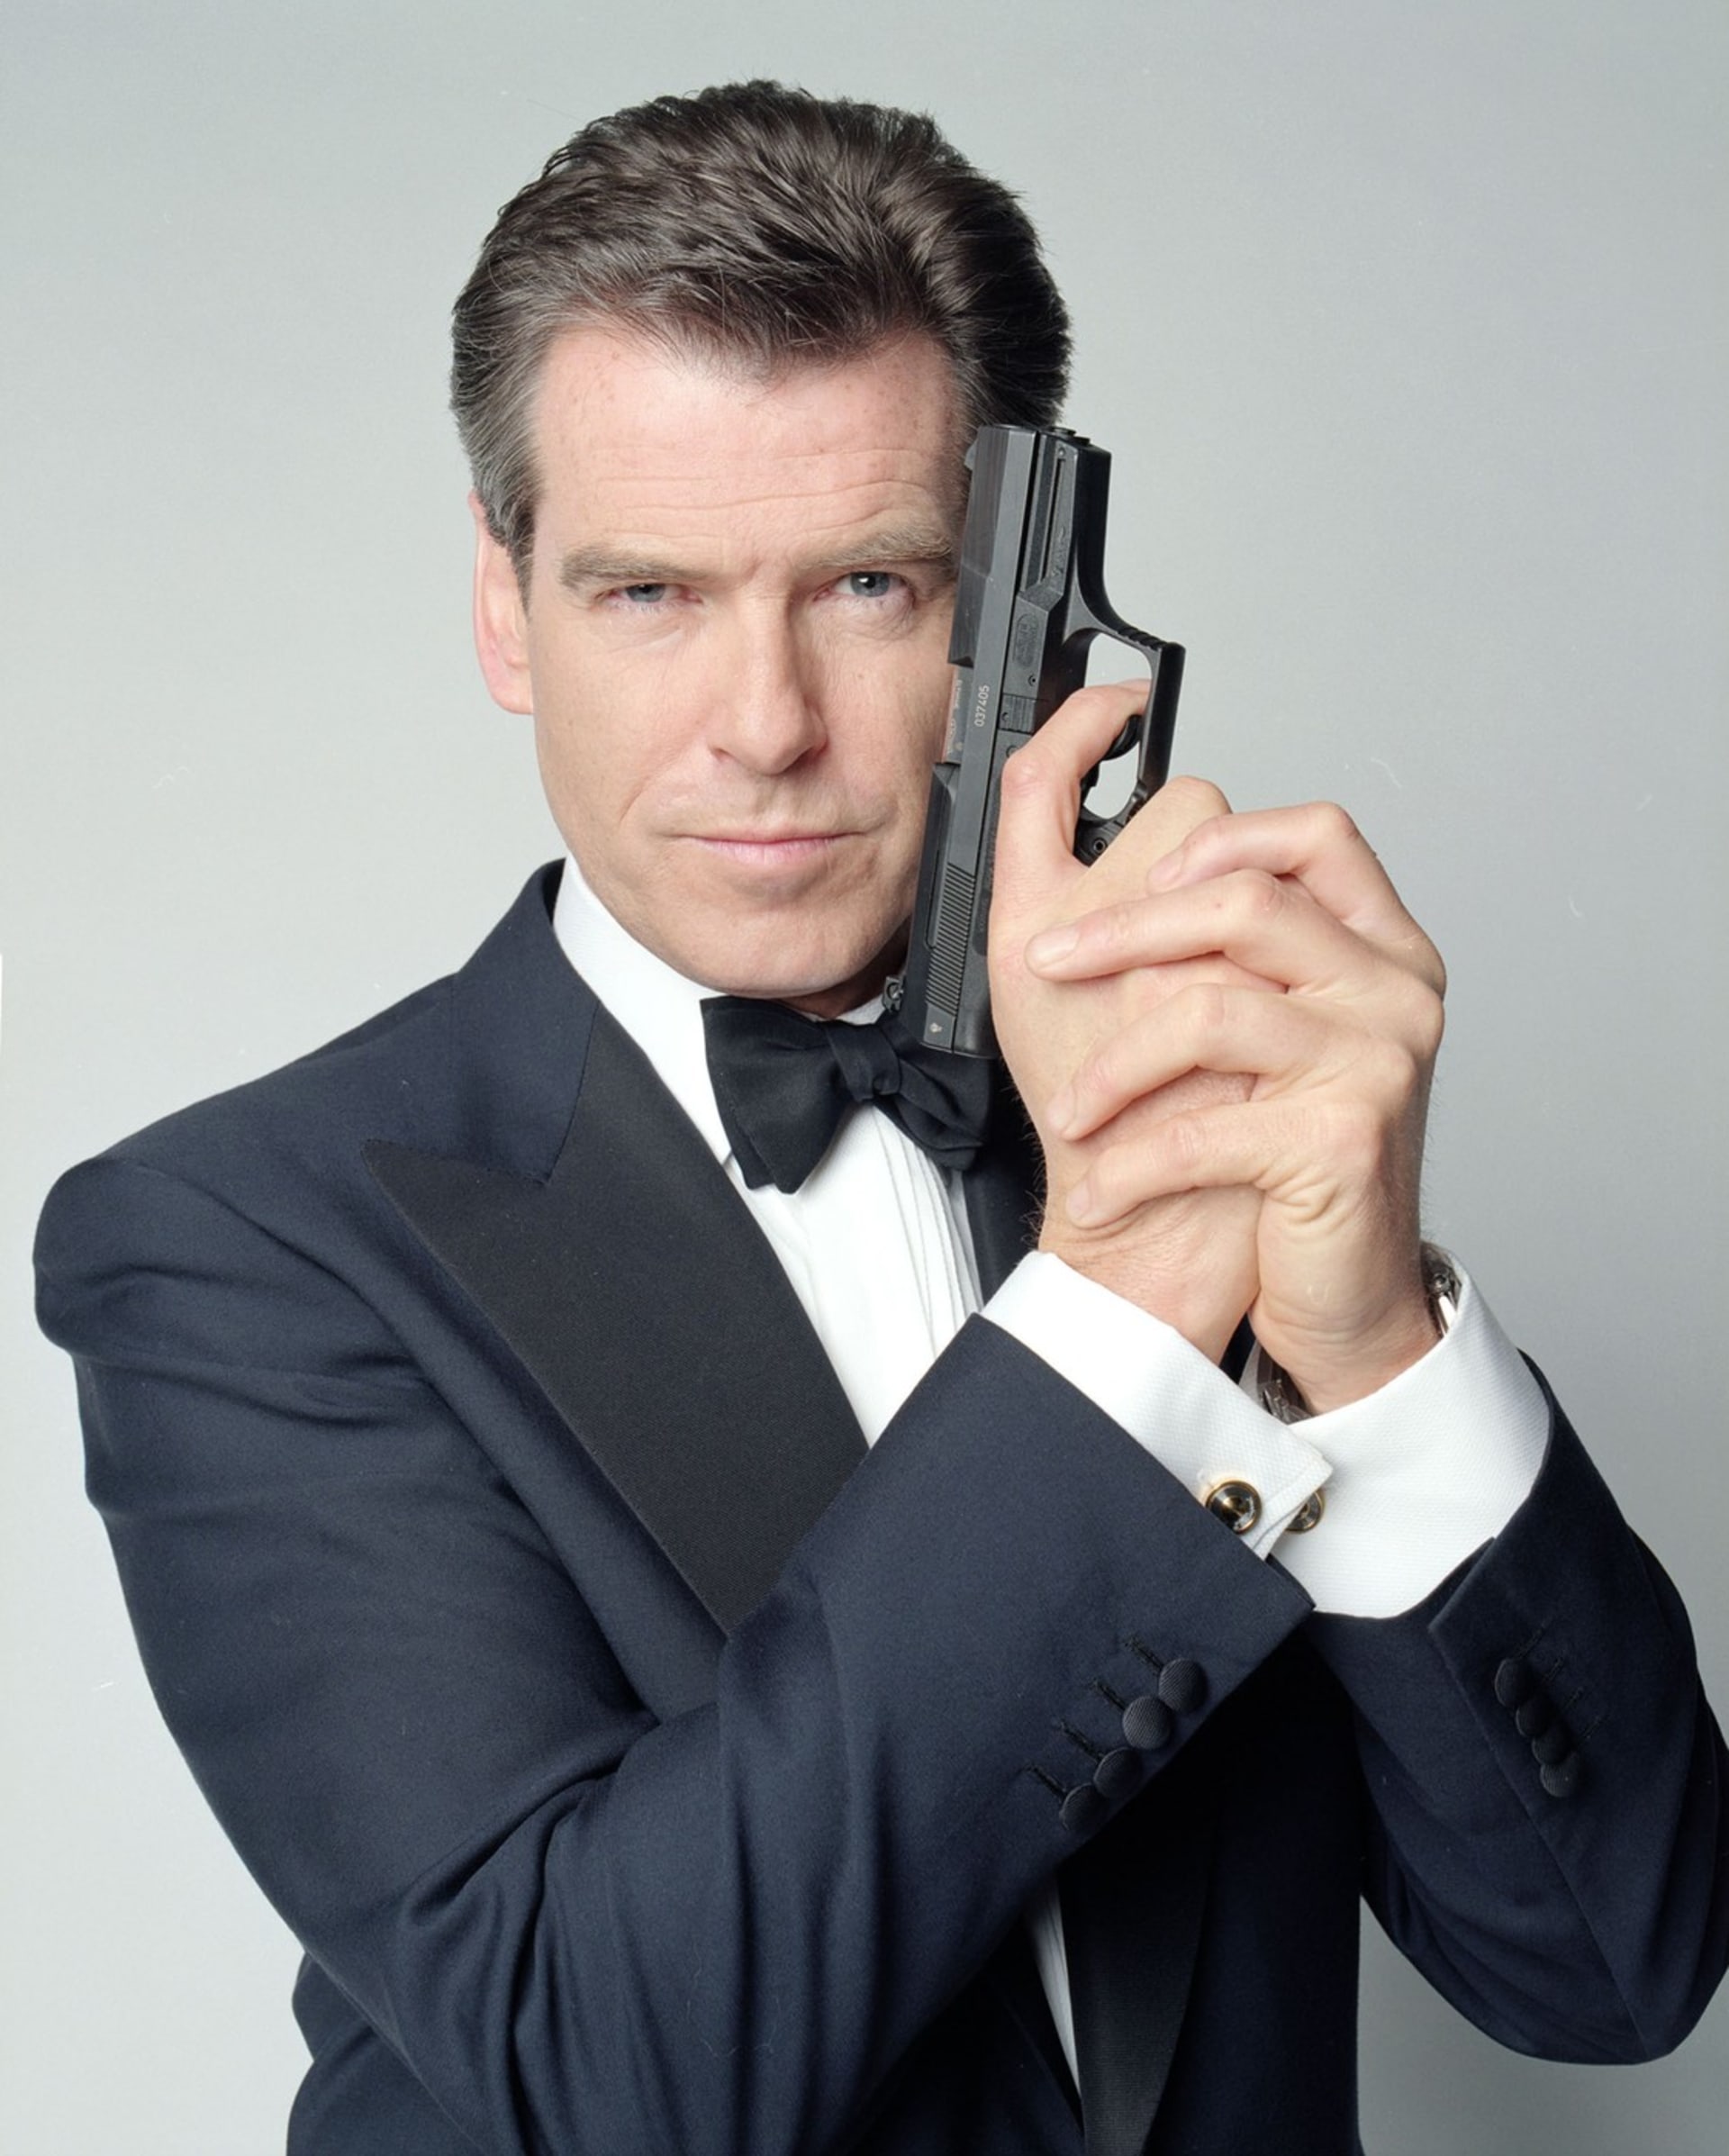 Nejenže agenta 007 nikdy neztvárnila žádná žena, ale roli zatím nedostal ani muž jiné než světlé pleti.